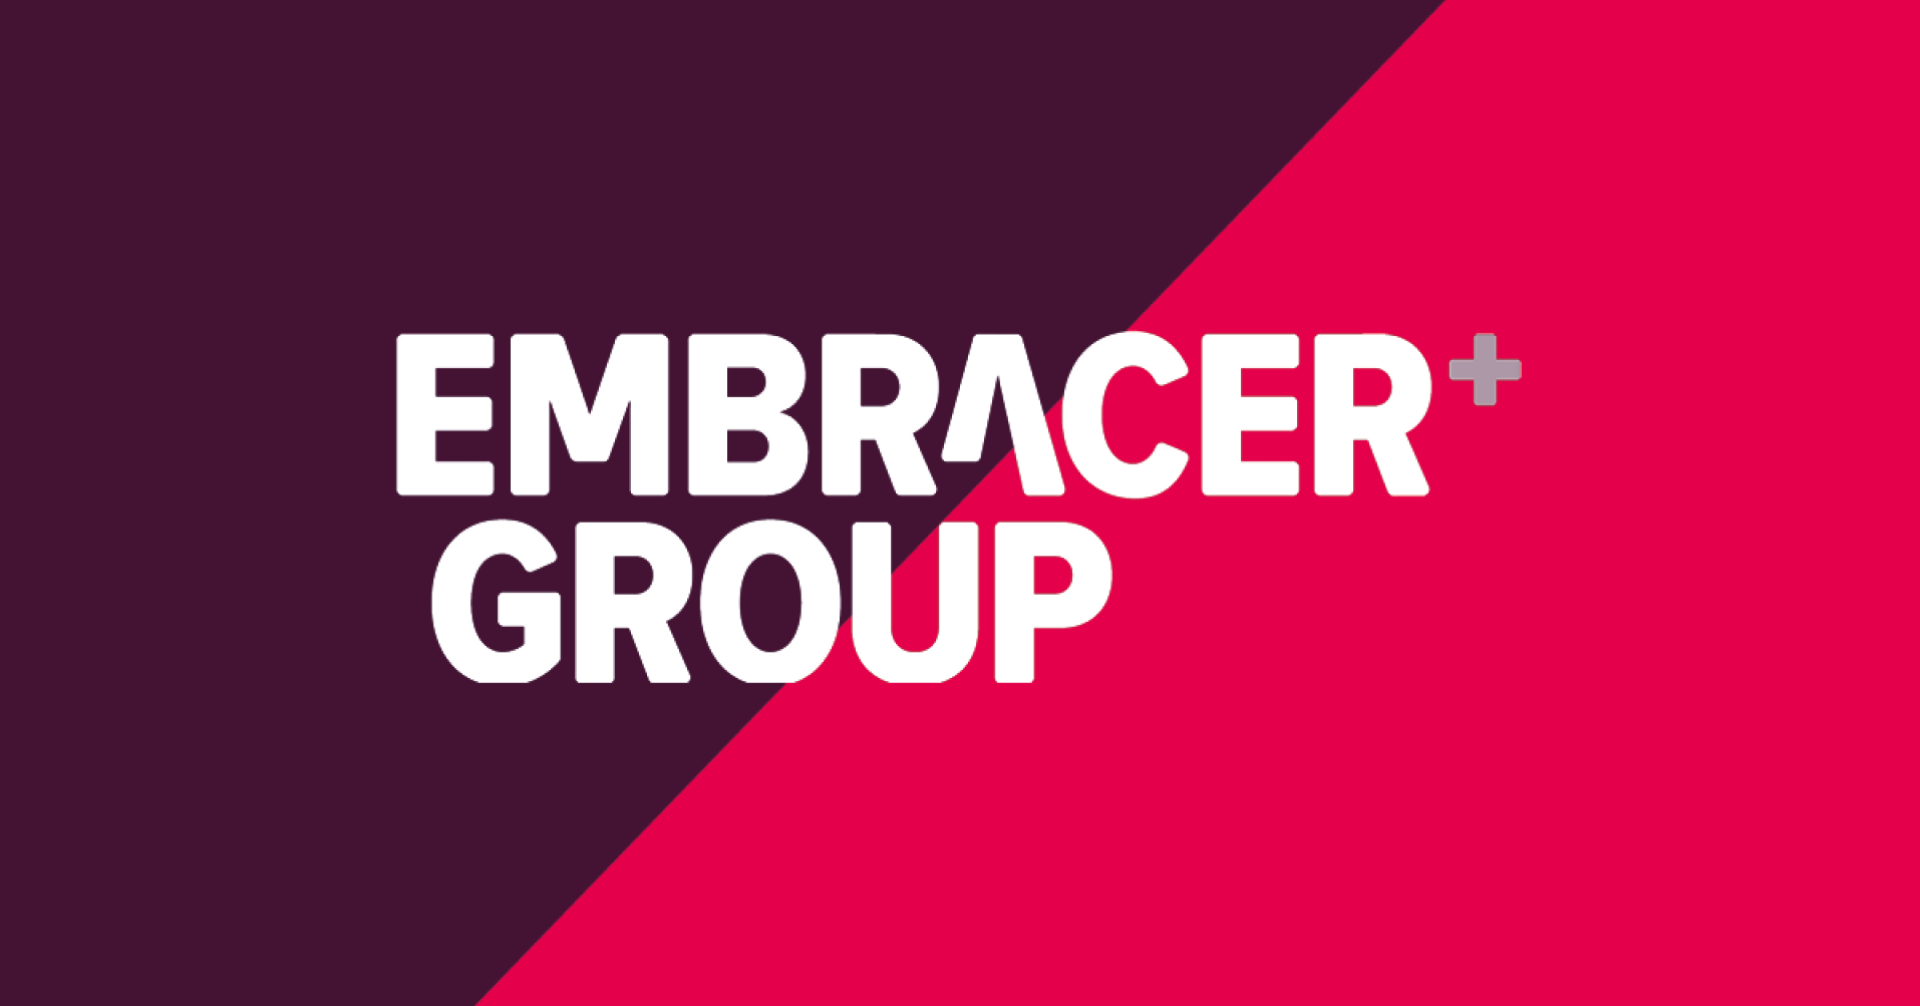 Embracer Group ค่ายเกมยักษ์ใหญ่จากสวีเดน ประกาศจะซื้อ 37 ค่ายเกมในปีหน้า